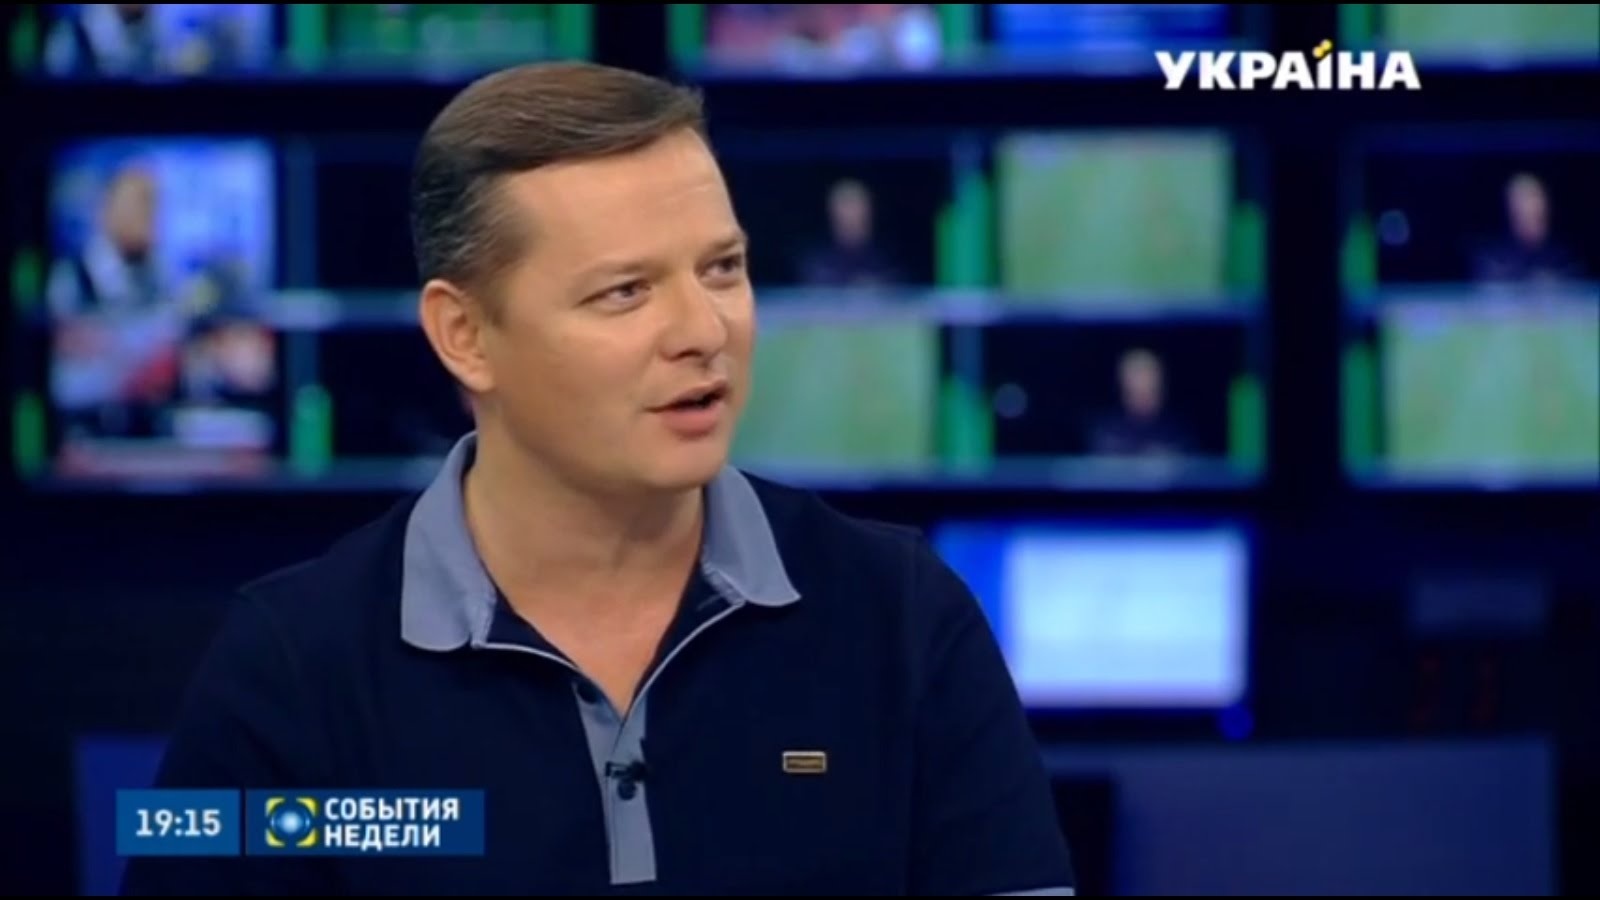 Телеканал «Україна» Ахметова у звіті політичної сили не згадується жодного разу.